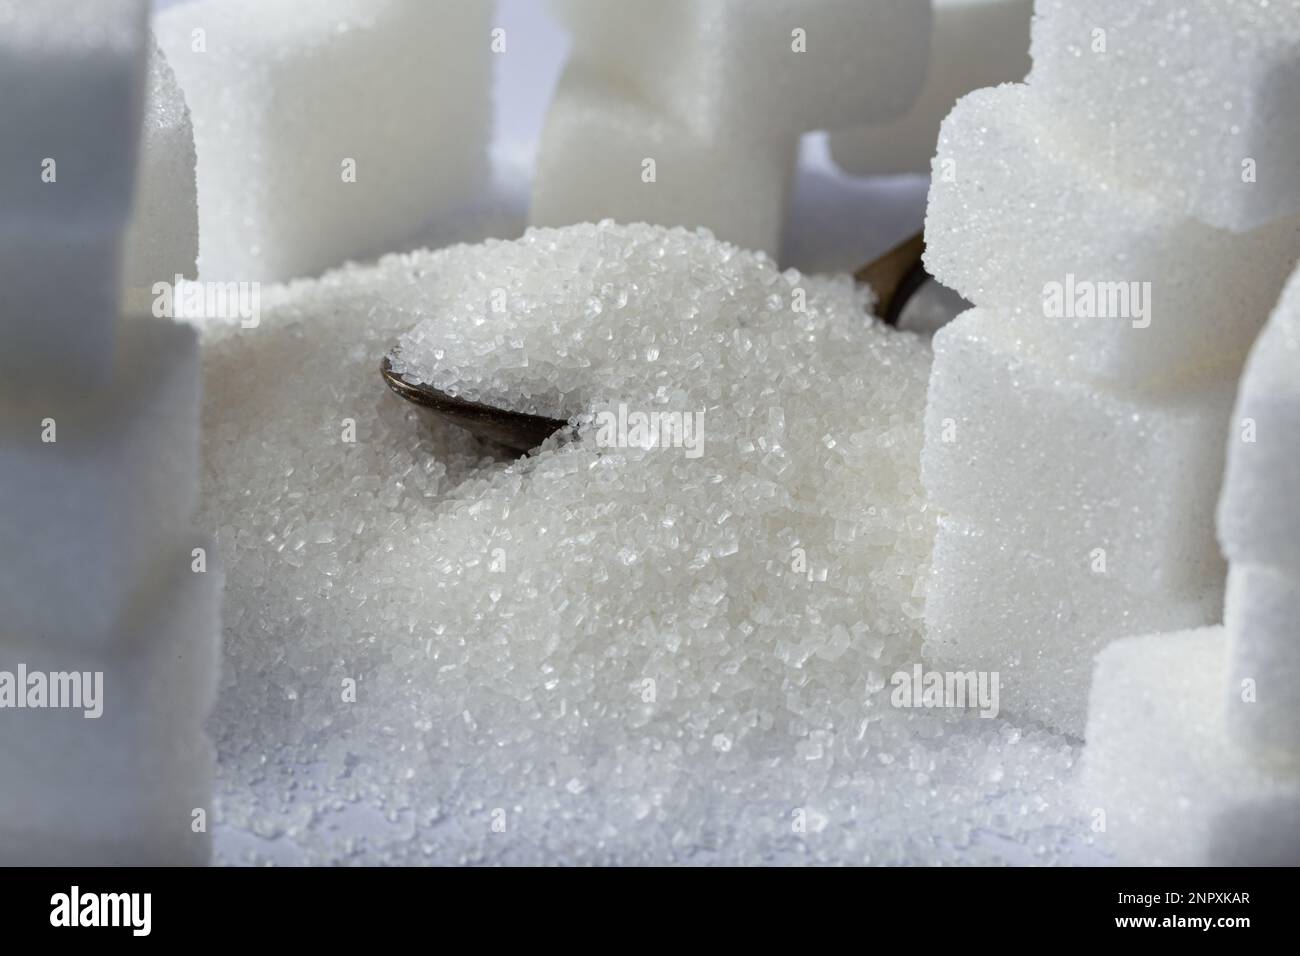 Soddisfate il vostro dolce dente: Un primo piano allettante dei cristalli e dei cubetti dello zucchero Foto Stock